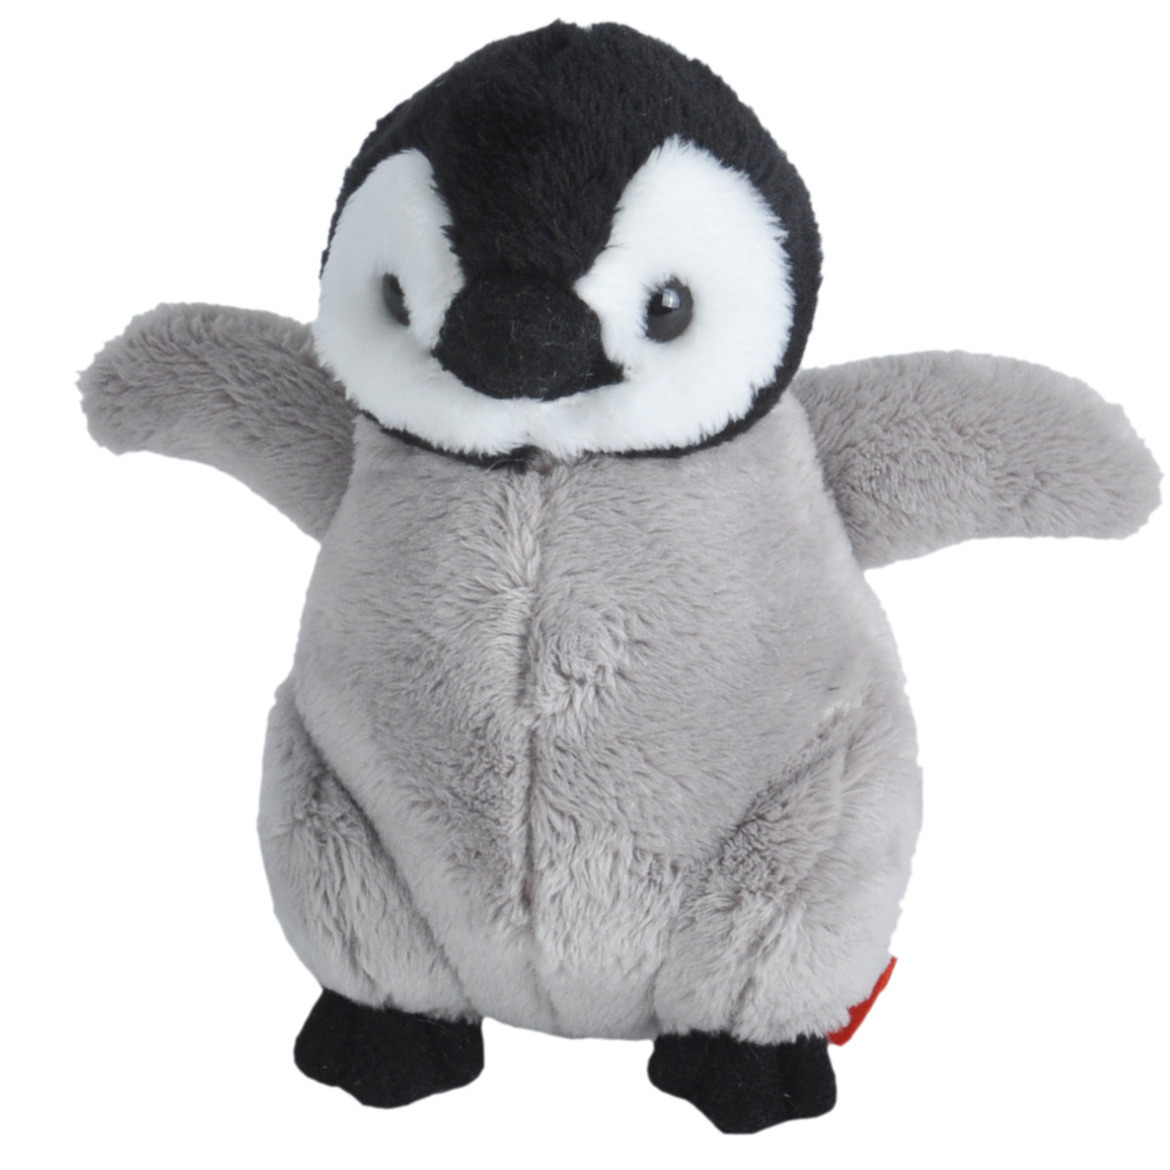 Pluche knuffel dieren Pinguin kuiken van ongeveer 13 cm - Speelgoed knuffelbeesten